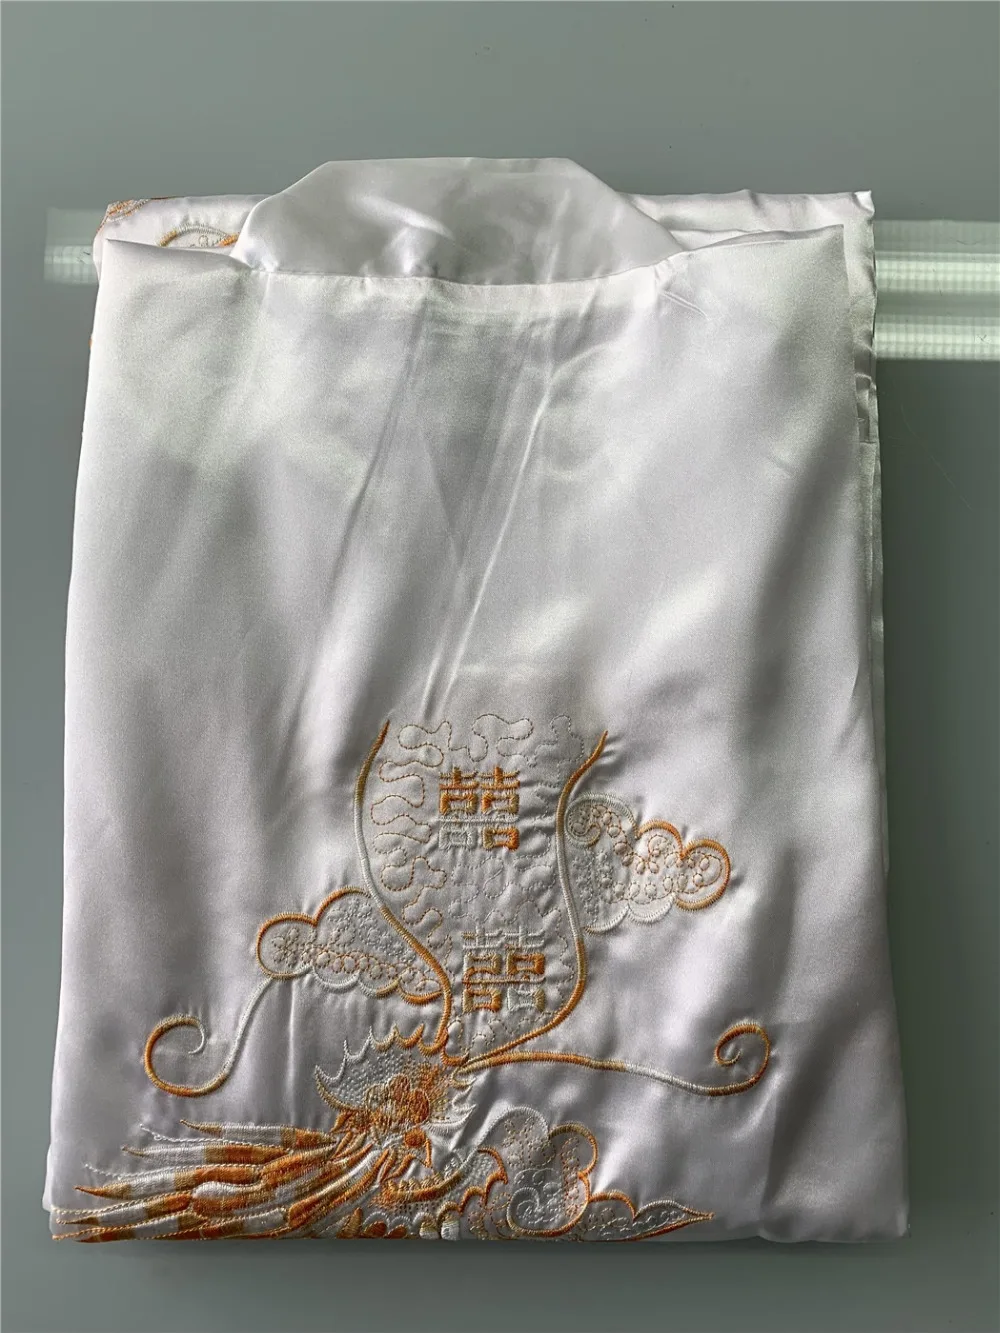 Шанхай история Китайский Мужской Атласный полиэстер Вышивка халат кимоно Ночная рубашка пижама с драконом M L XL XXL 3XL